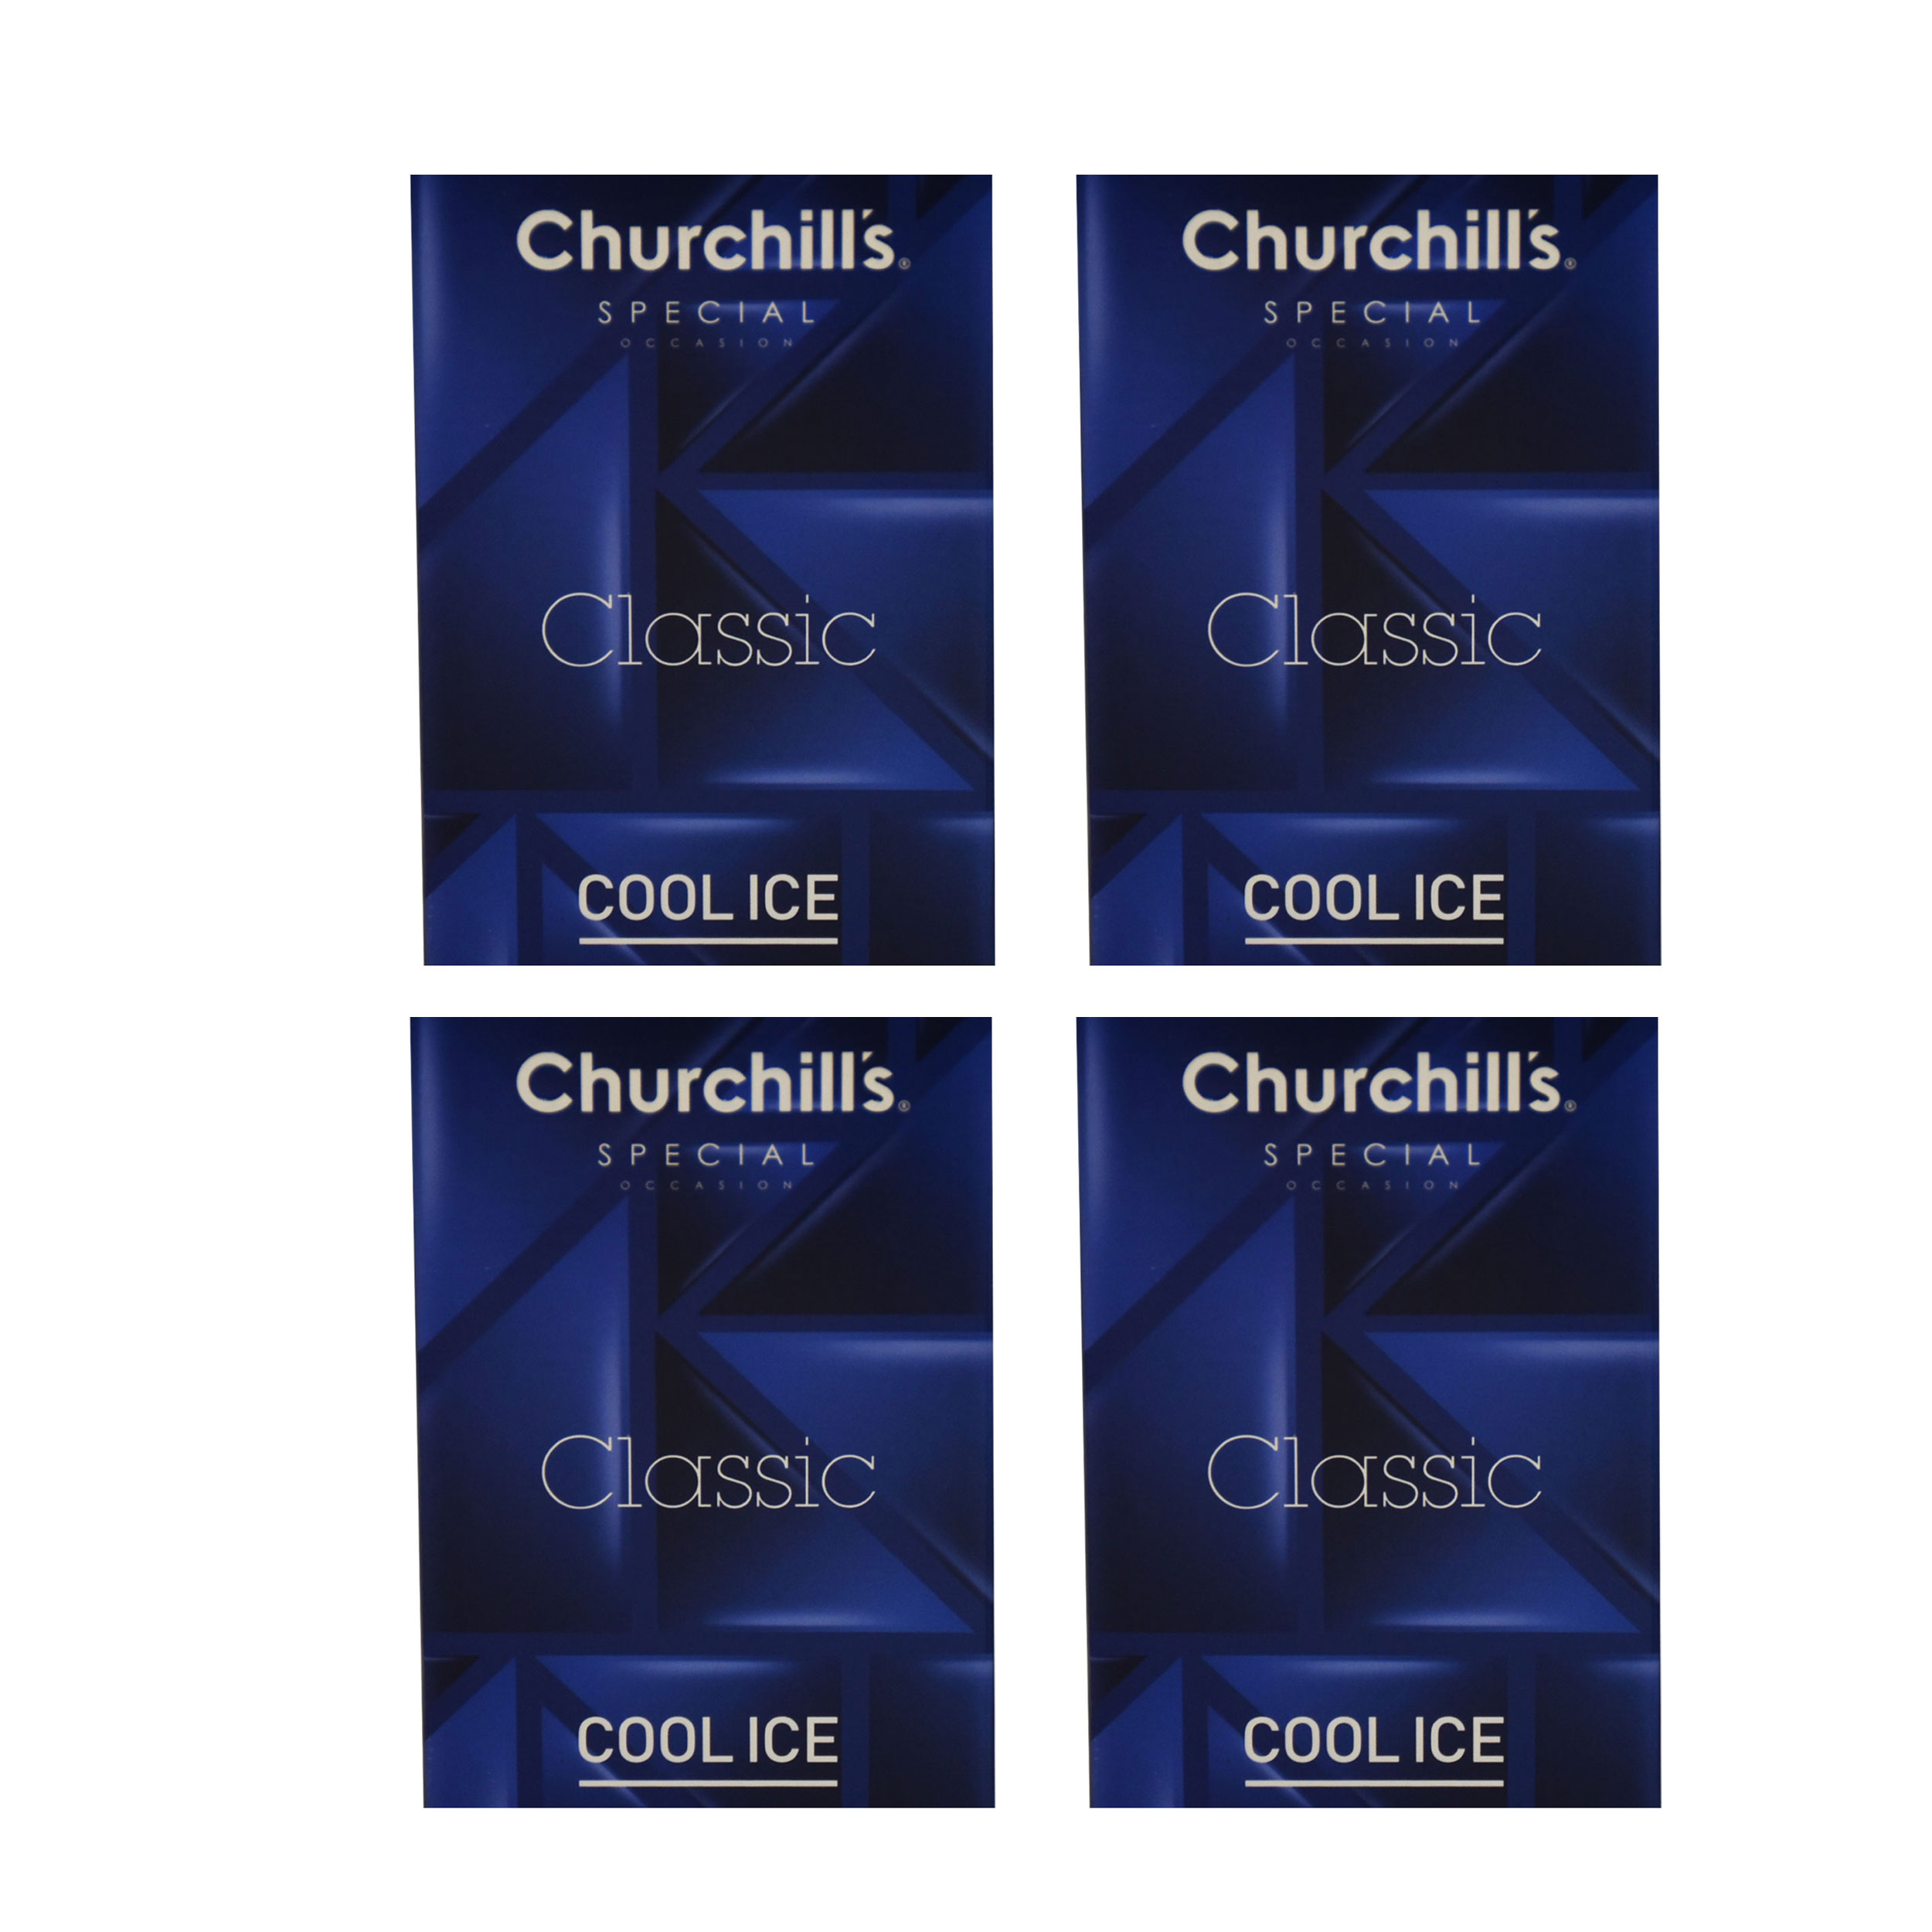 کاندوم چرچیلز مدل Classic Cool Ice مجموعه 4 عددی